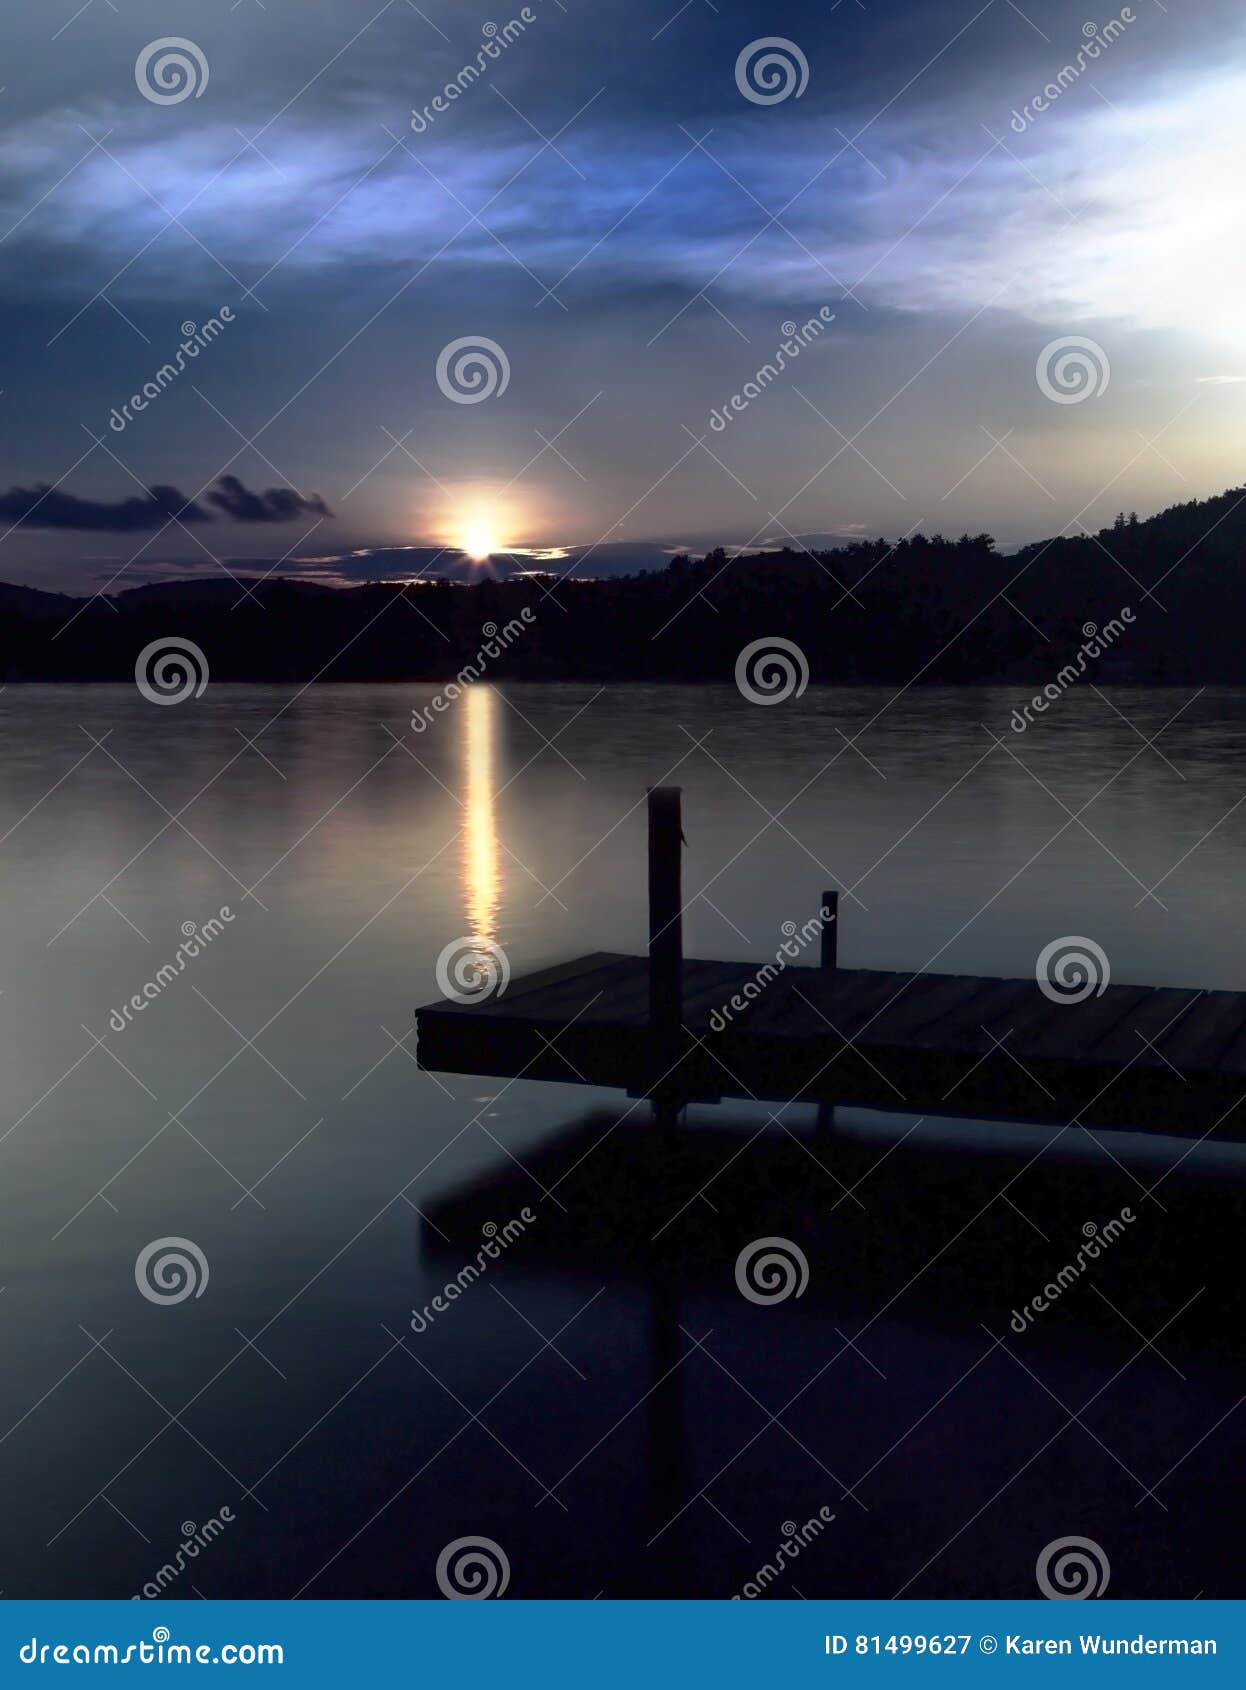 Dock On Lake At Sunset Stock Image Image Of Reflection 81499627